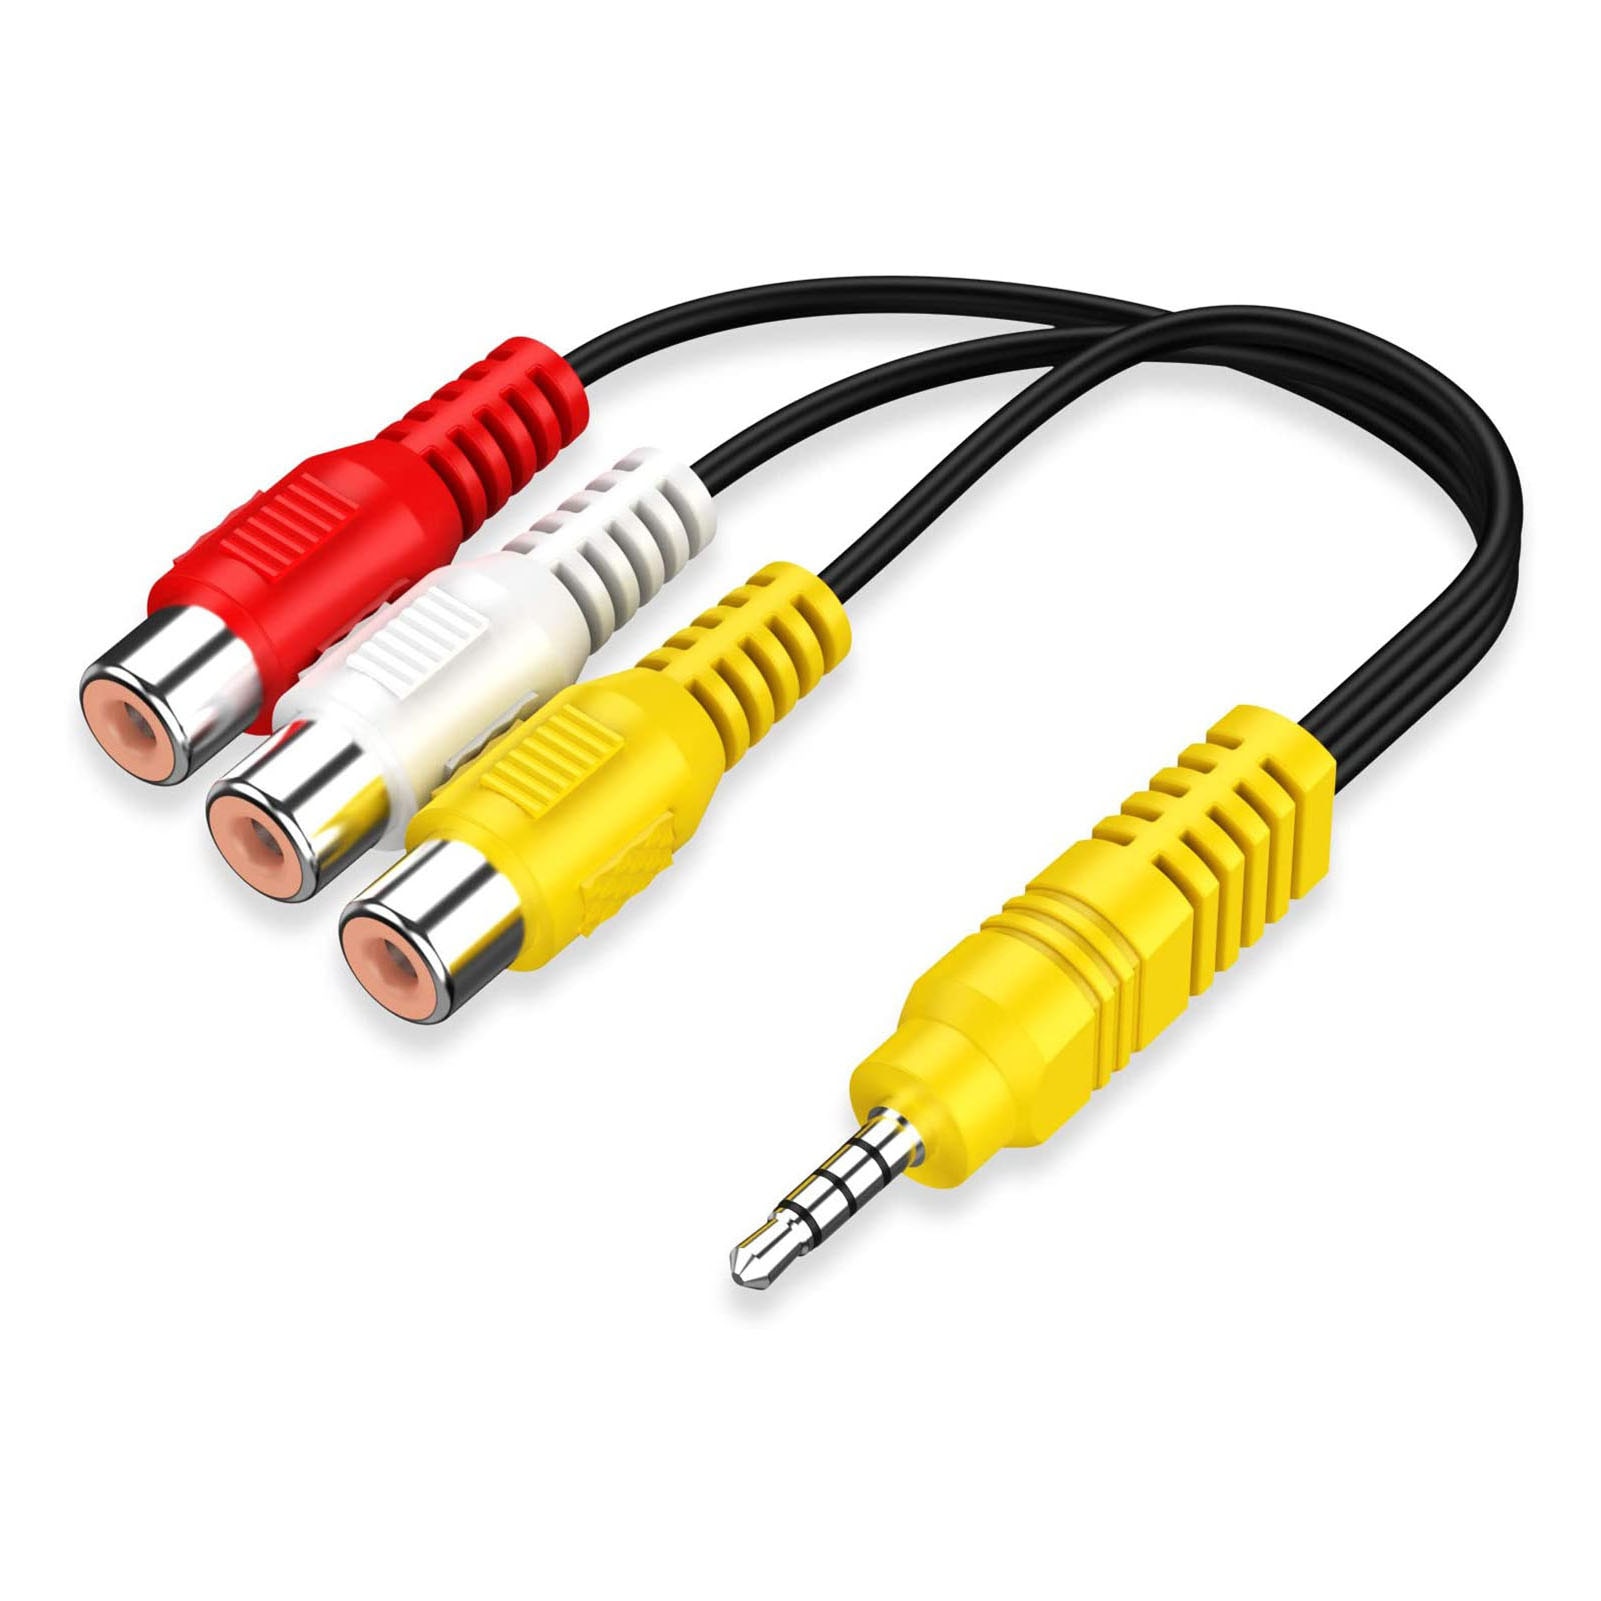 Cable adaptador AV de 3,5mm a 3 RCA, componente de vídeo para TV TCL | Cable de vídeo hembra RCA rojo, blanco y amarillo